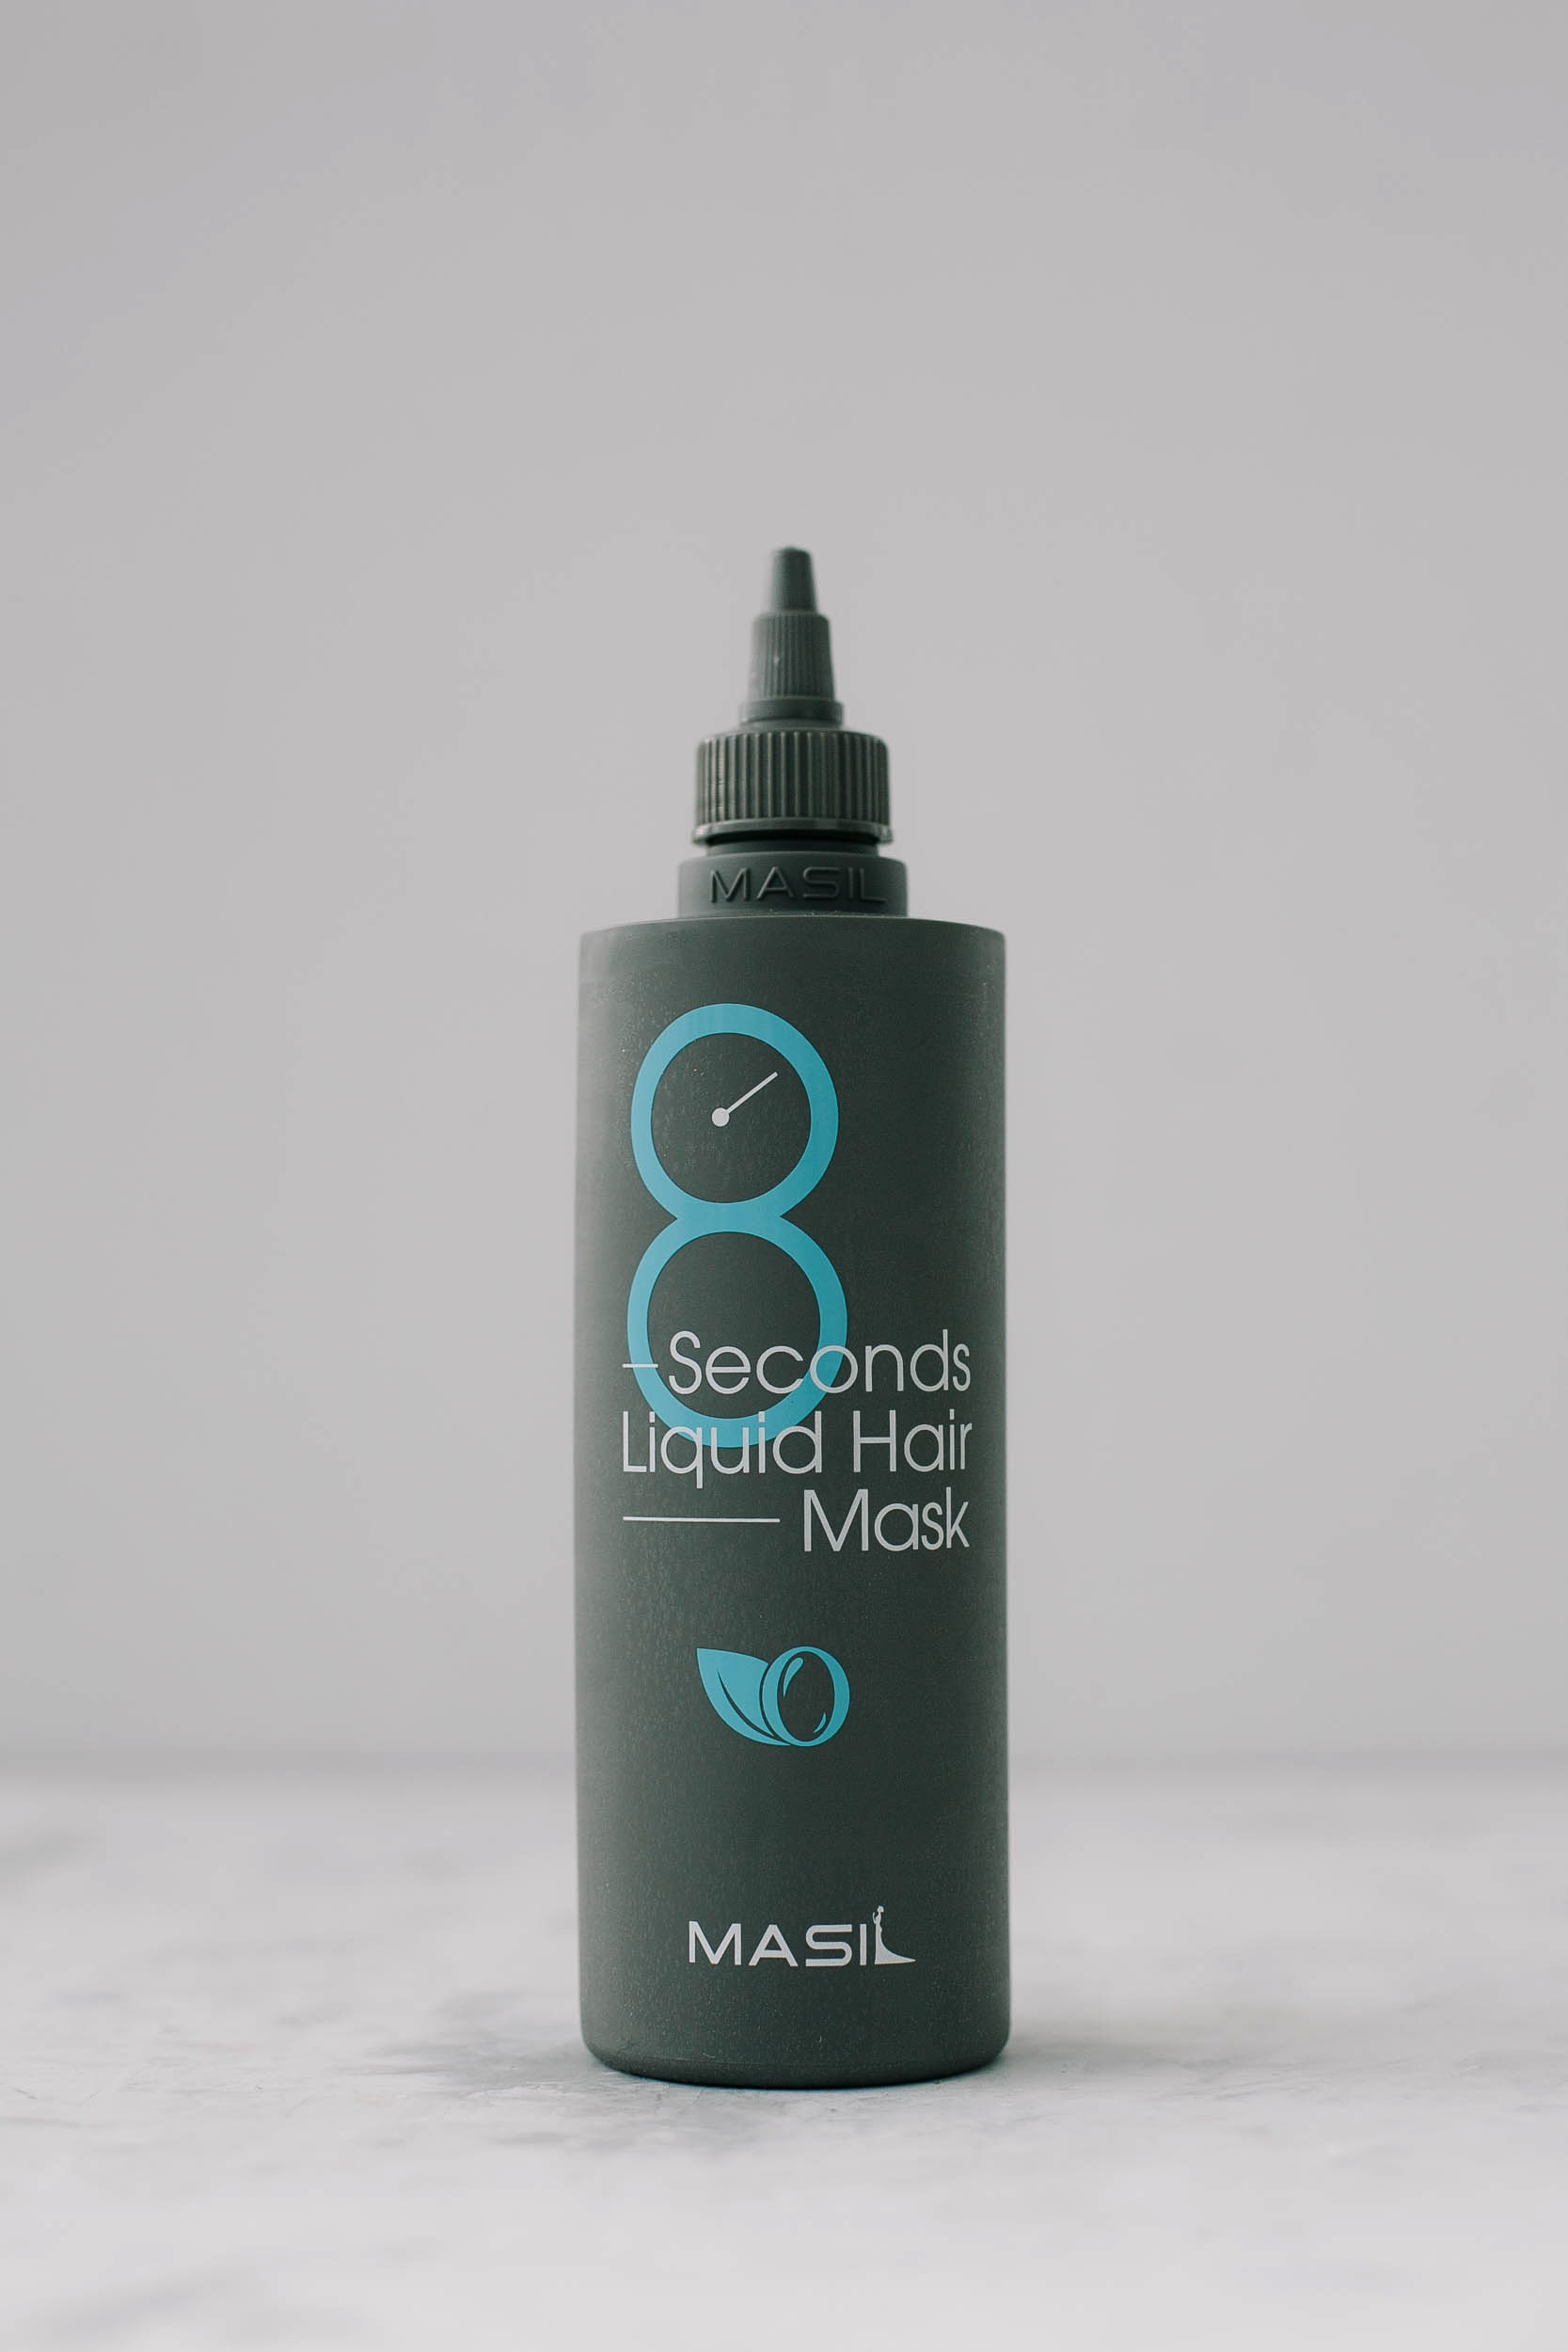 BU// Экспресс-маска для красивых и ухоженных волос MASIL 8 Seconds Liquid Hair Mask 350ml - фото 1